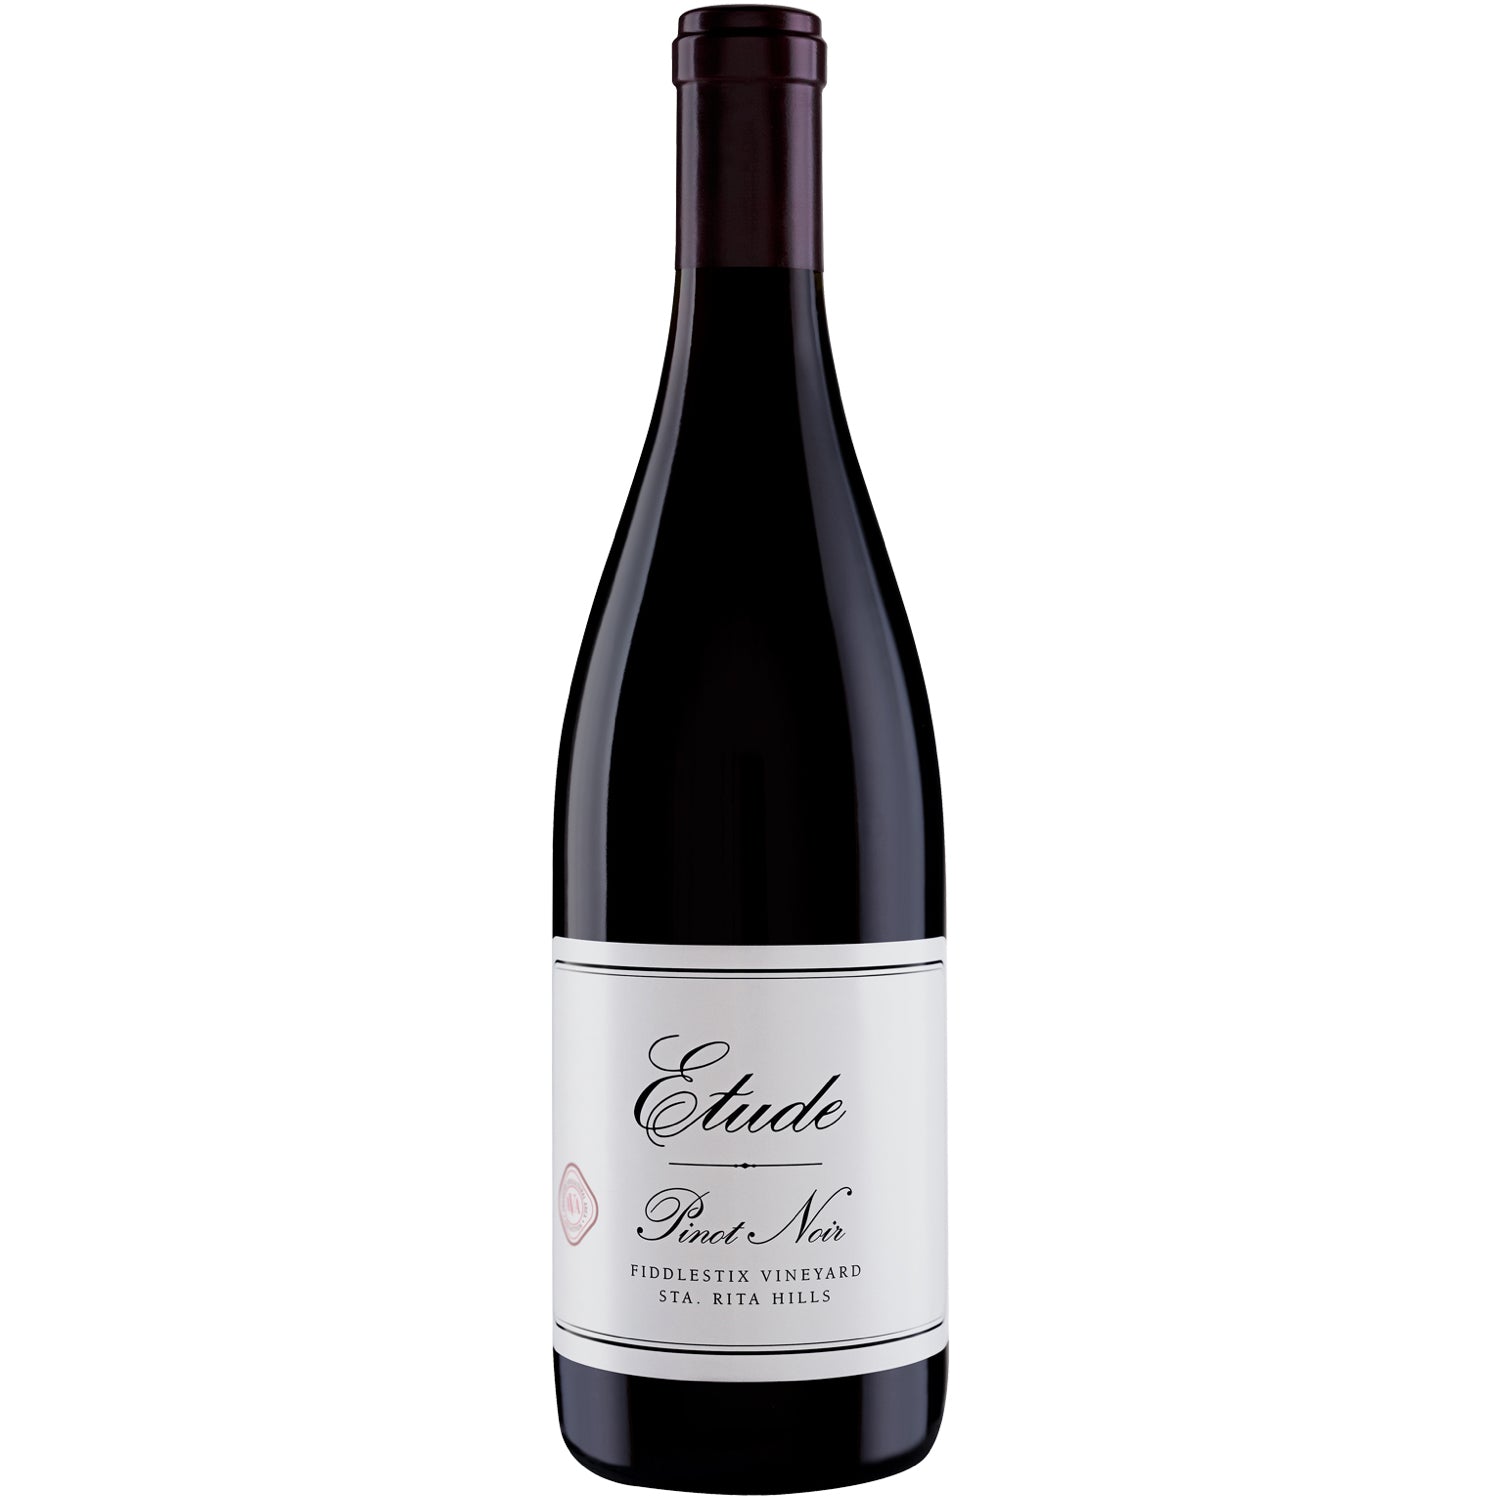 Etude Pinot Noir Fiddlestix Vineyard [750ml]